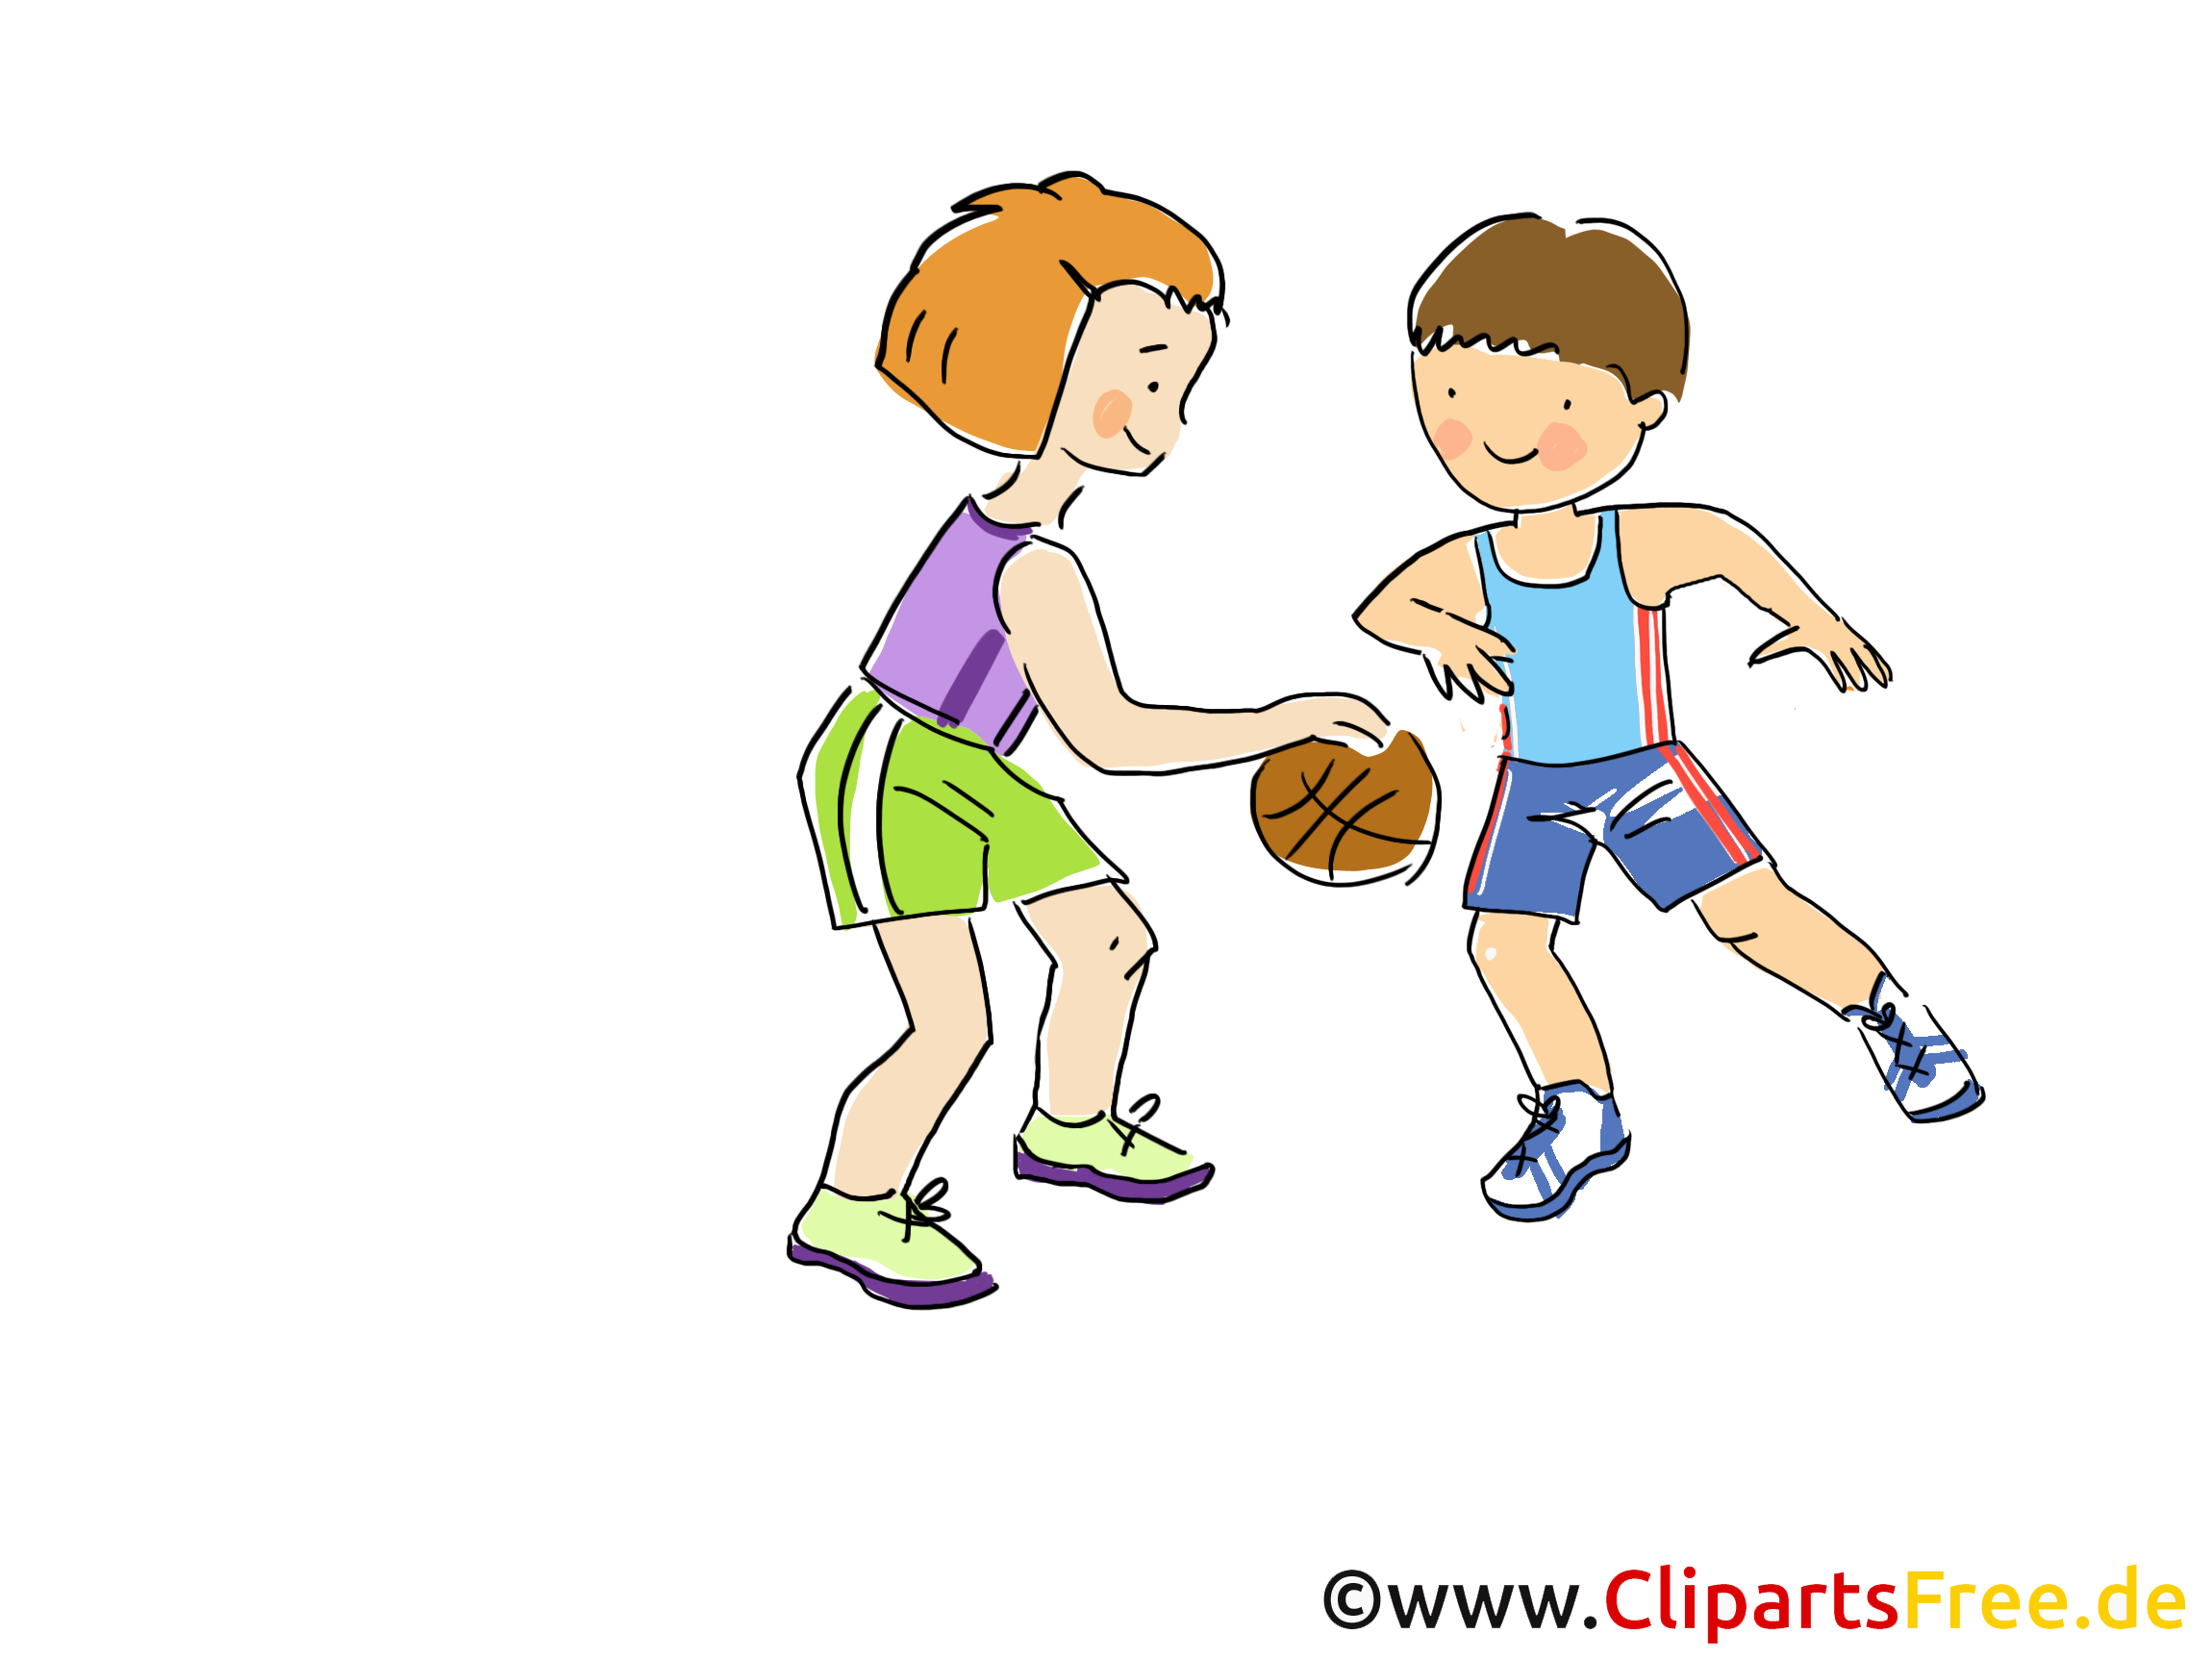 Basket-ball illustration à télécharger gratuite